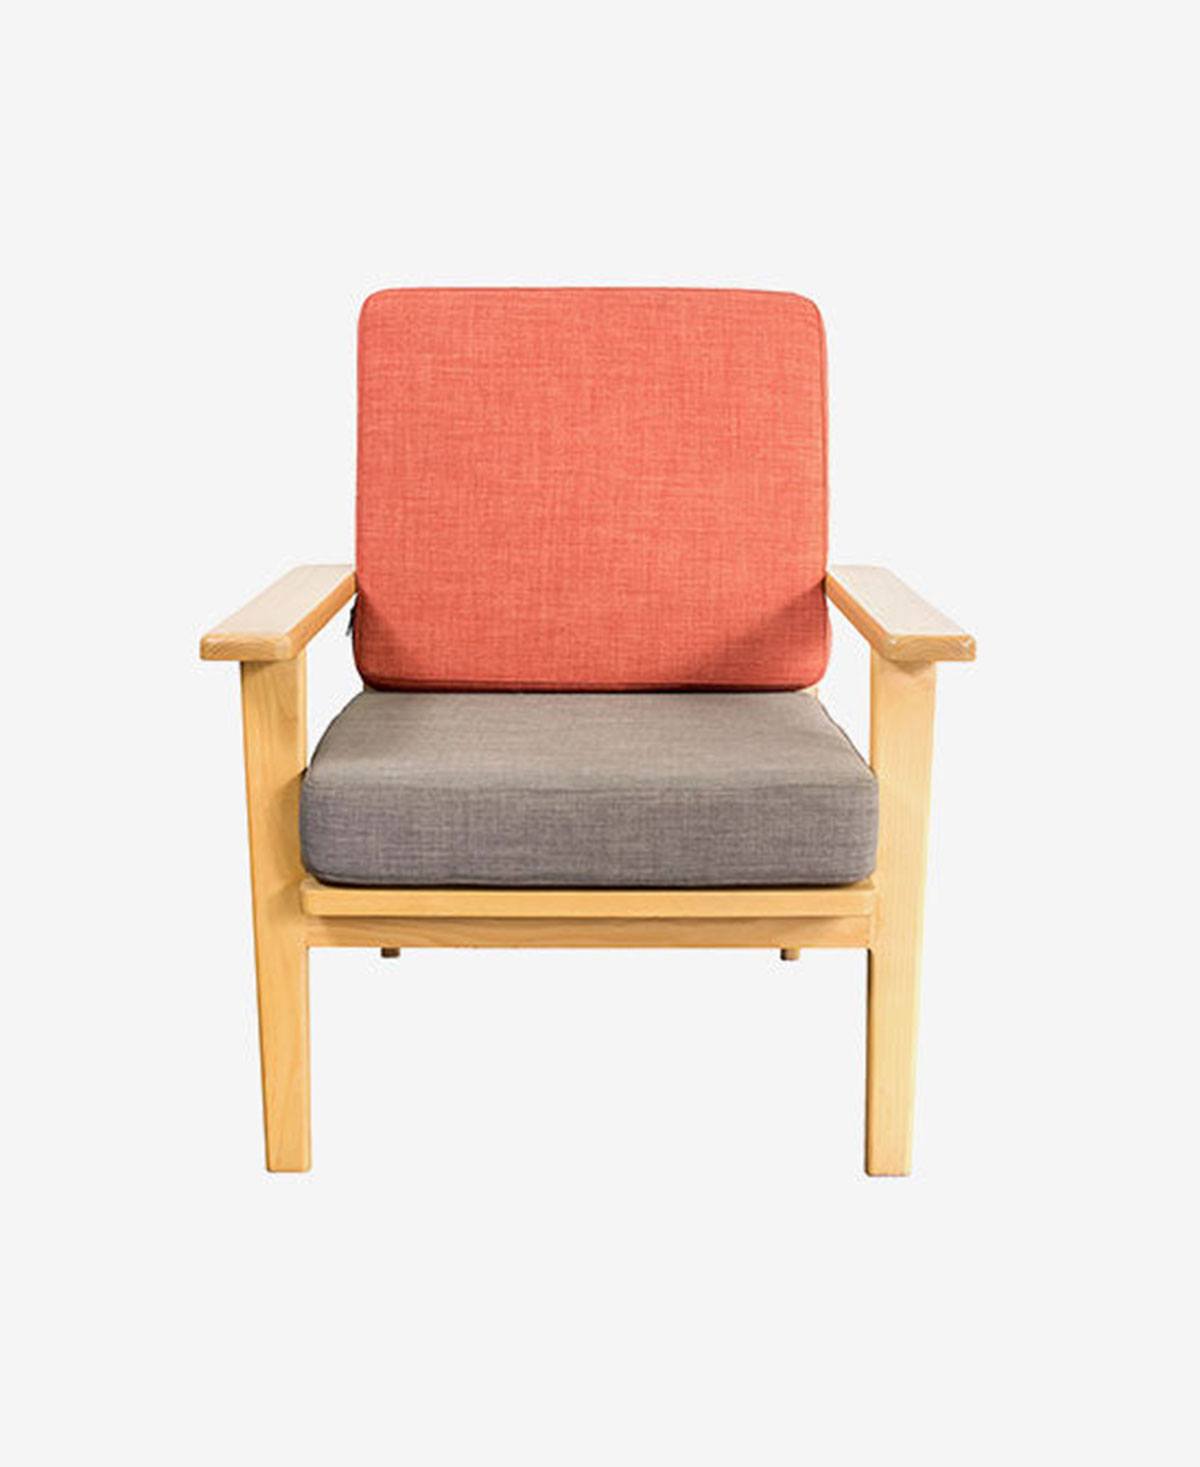 Orange wooden chair